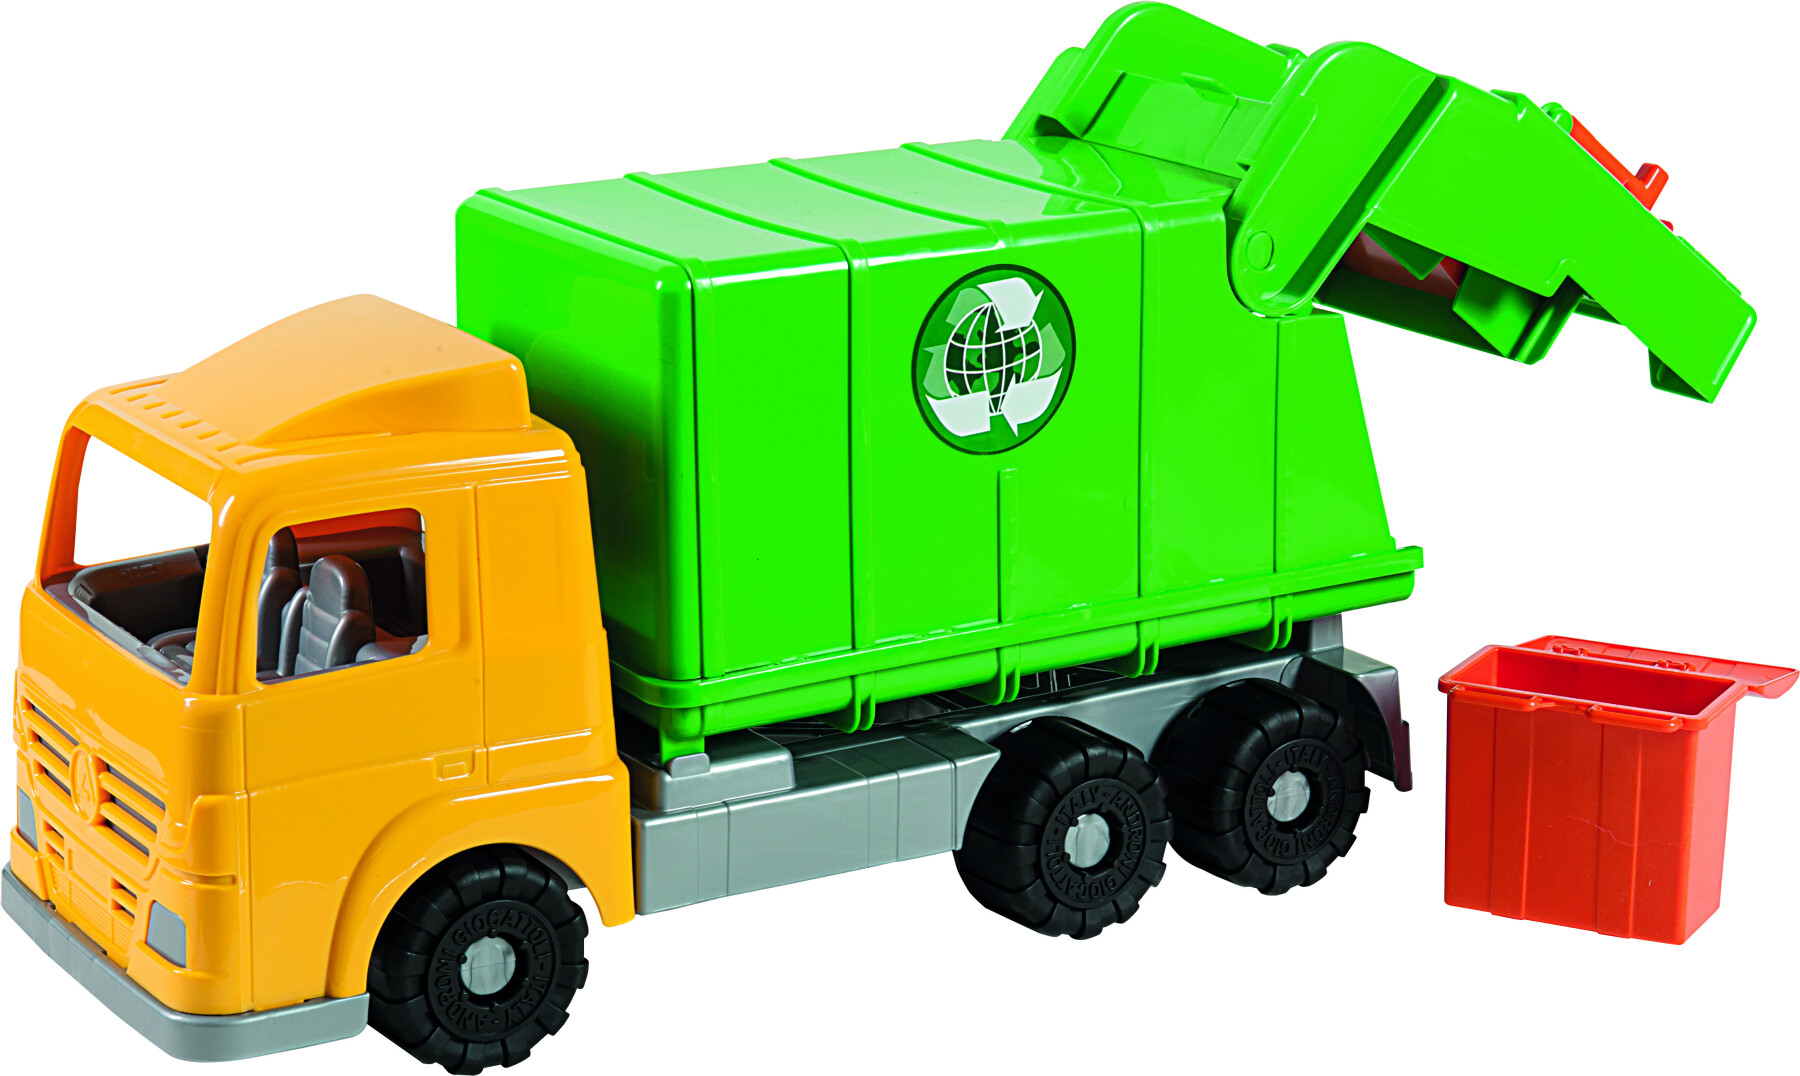 Camion spazzatura  cm 45 in scatola cartone riciclabile, con cassonetto, in due colori - 